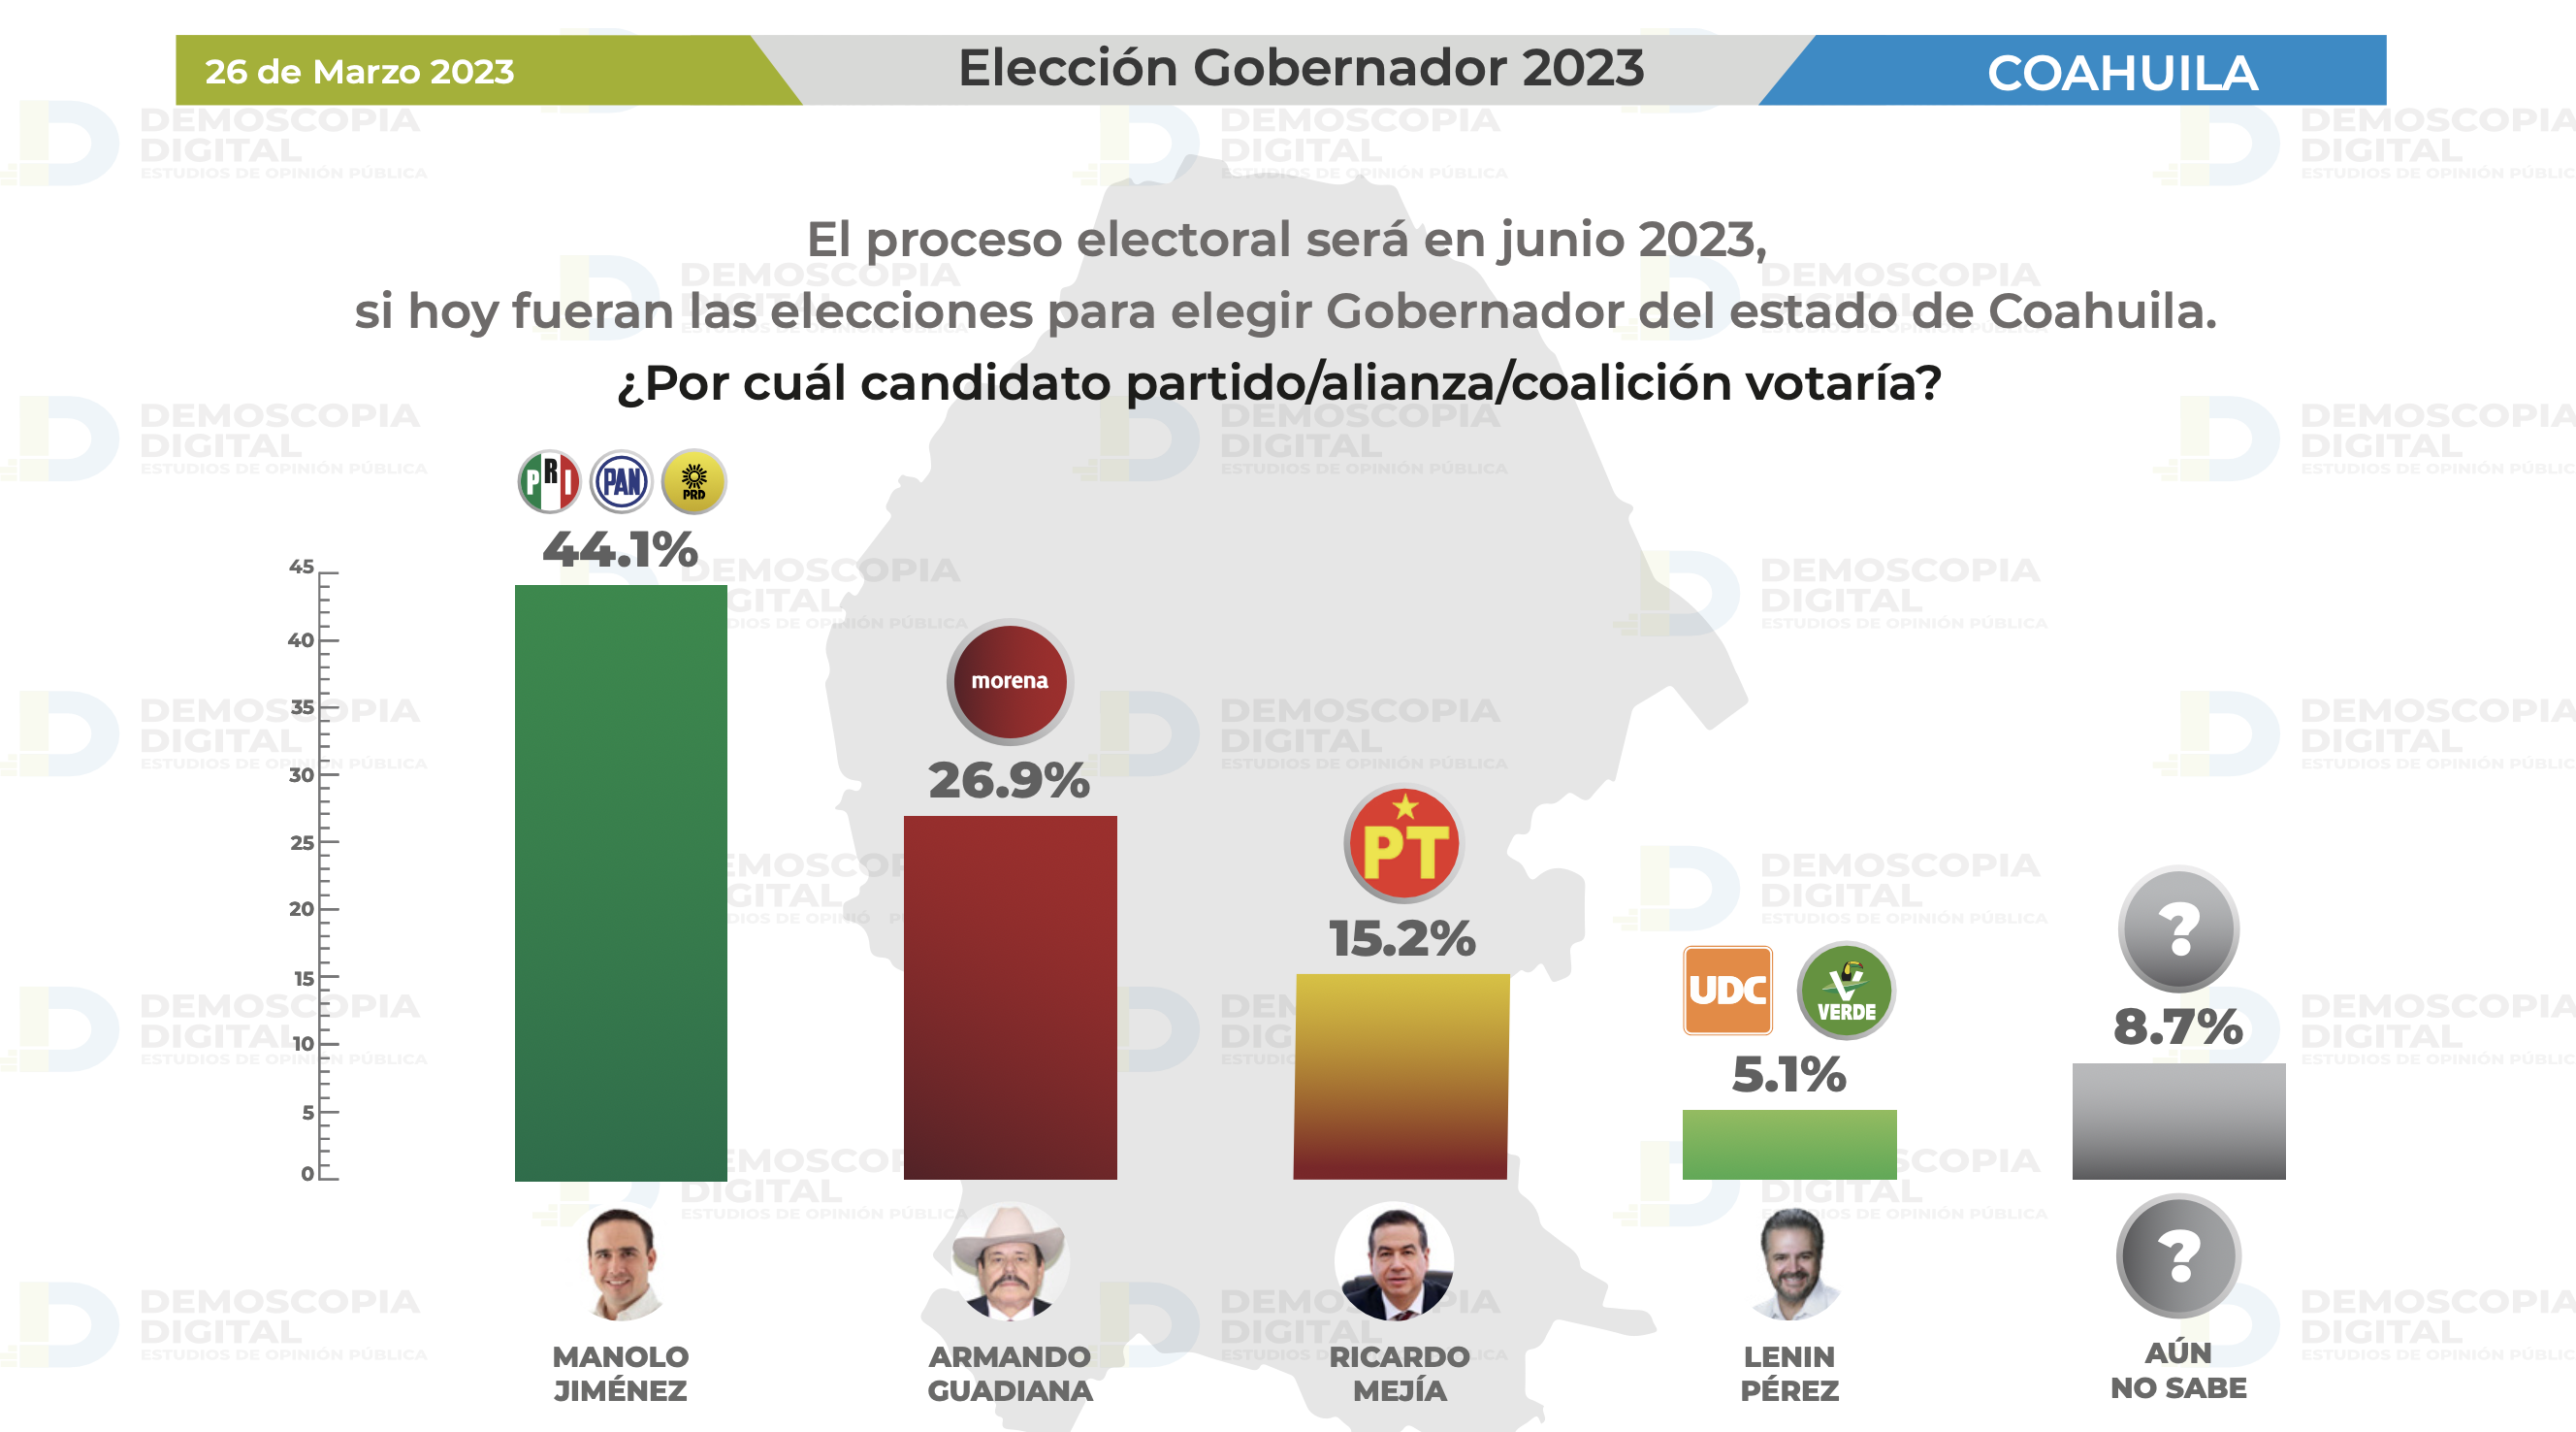 Con 17.2%, Manolo Jiménez lidera las encuestas.